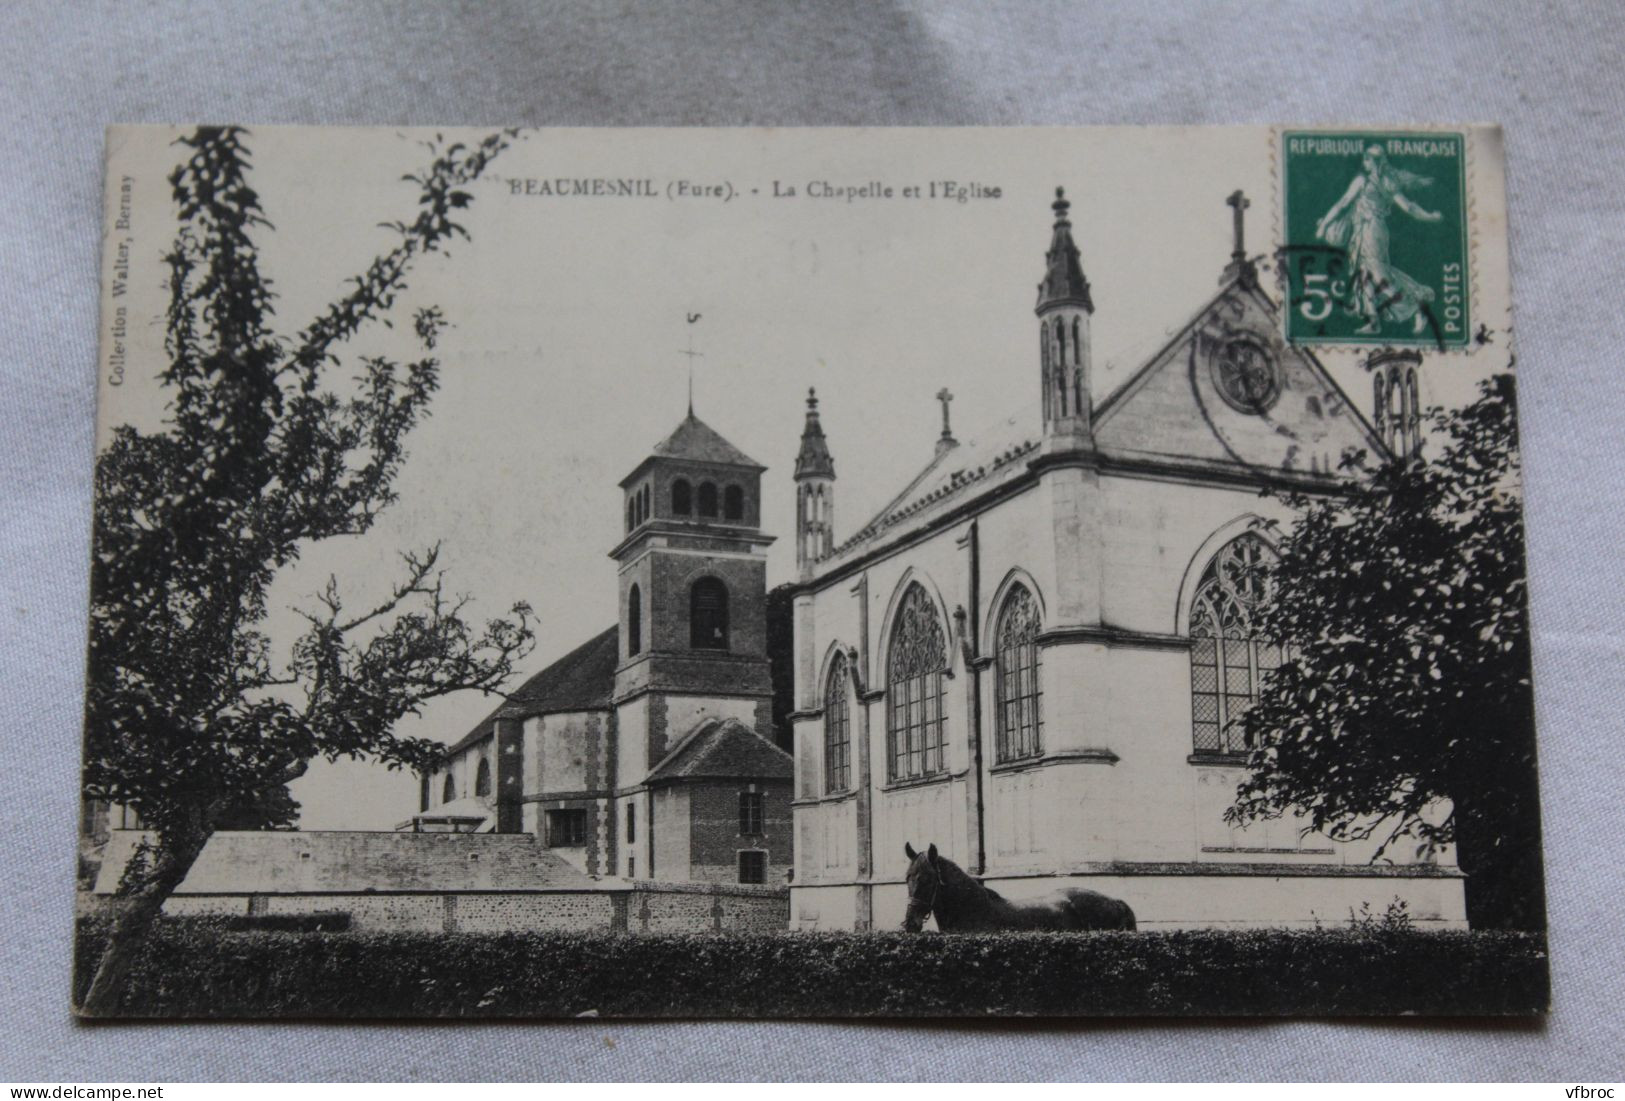 Cpa 1912, Beaumesnil, La Chapelle Et L'église, Eure 27 - Beaumesnil